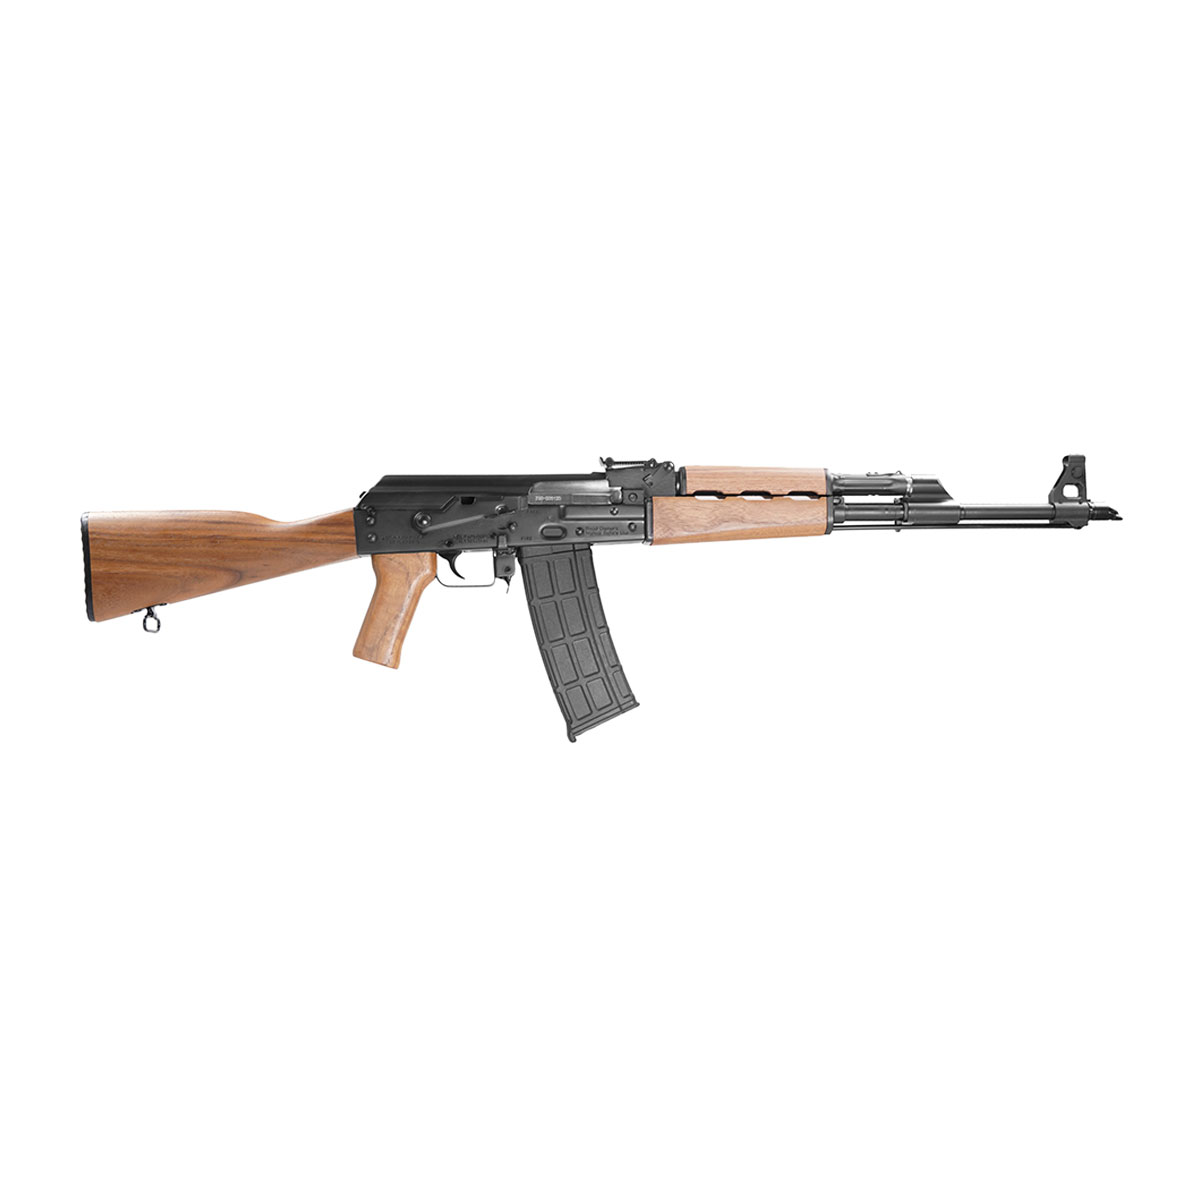 ZASTAVA ARMS USA - PAP M90 5.56X45 AK RIFLE